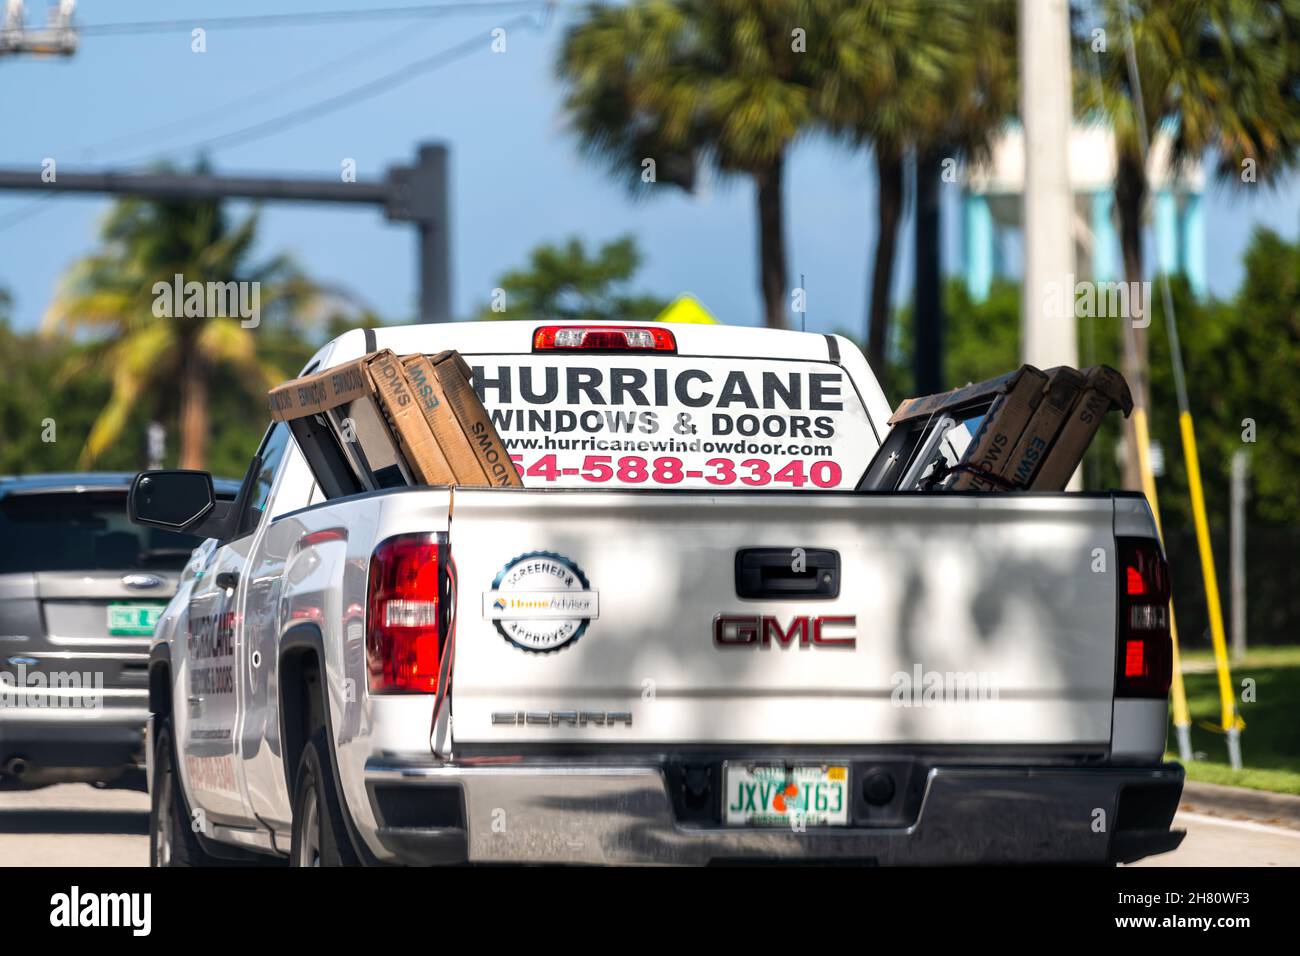 Hollywood, Stati Uniti d'America - 8 luglio 2021: Hurricane finestre e porte pubblicità segno sul camion servizio società di affari per installare persiane contro tempesta in M. Foto Stock